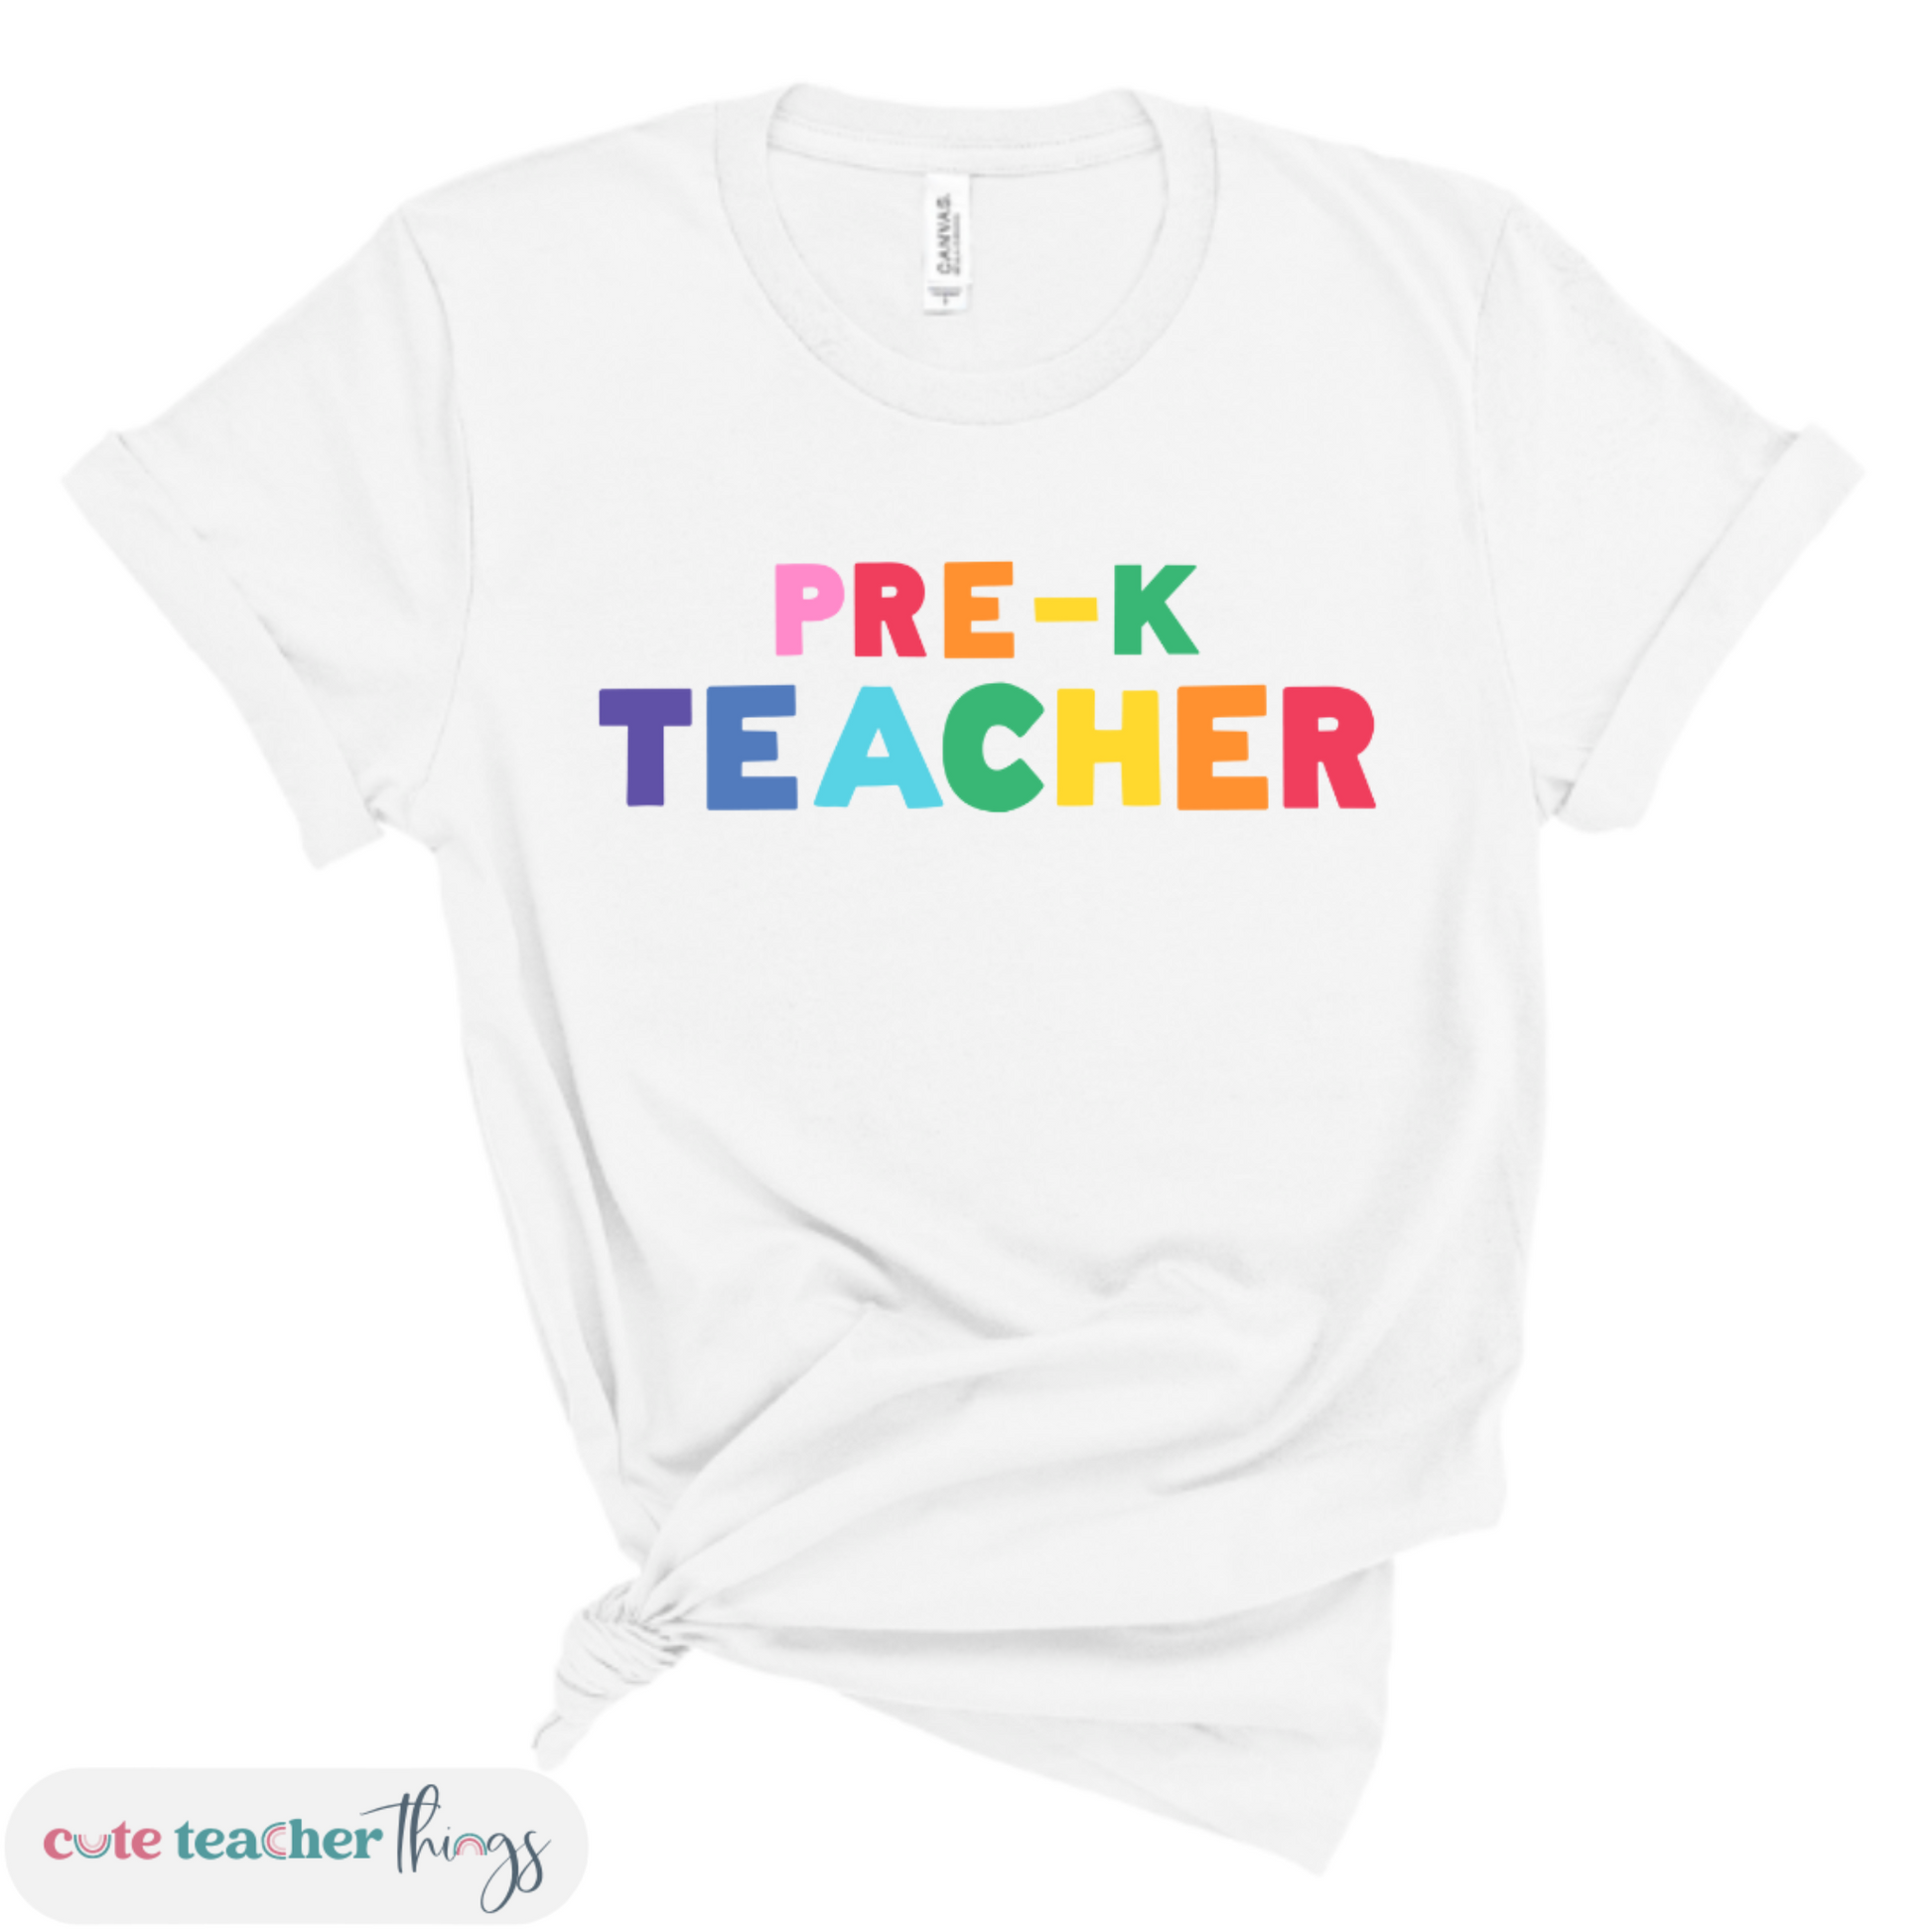 pre-k teacher t-shirt, cotton tee, teacher's day outfit